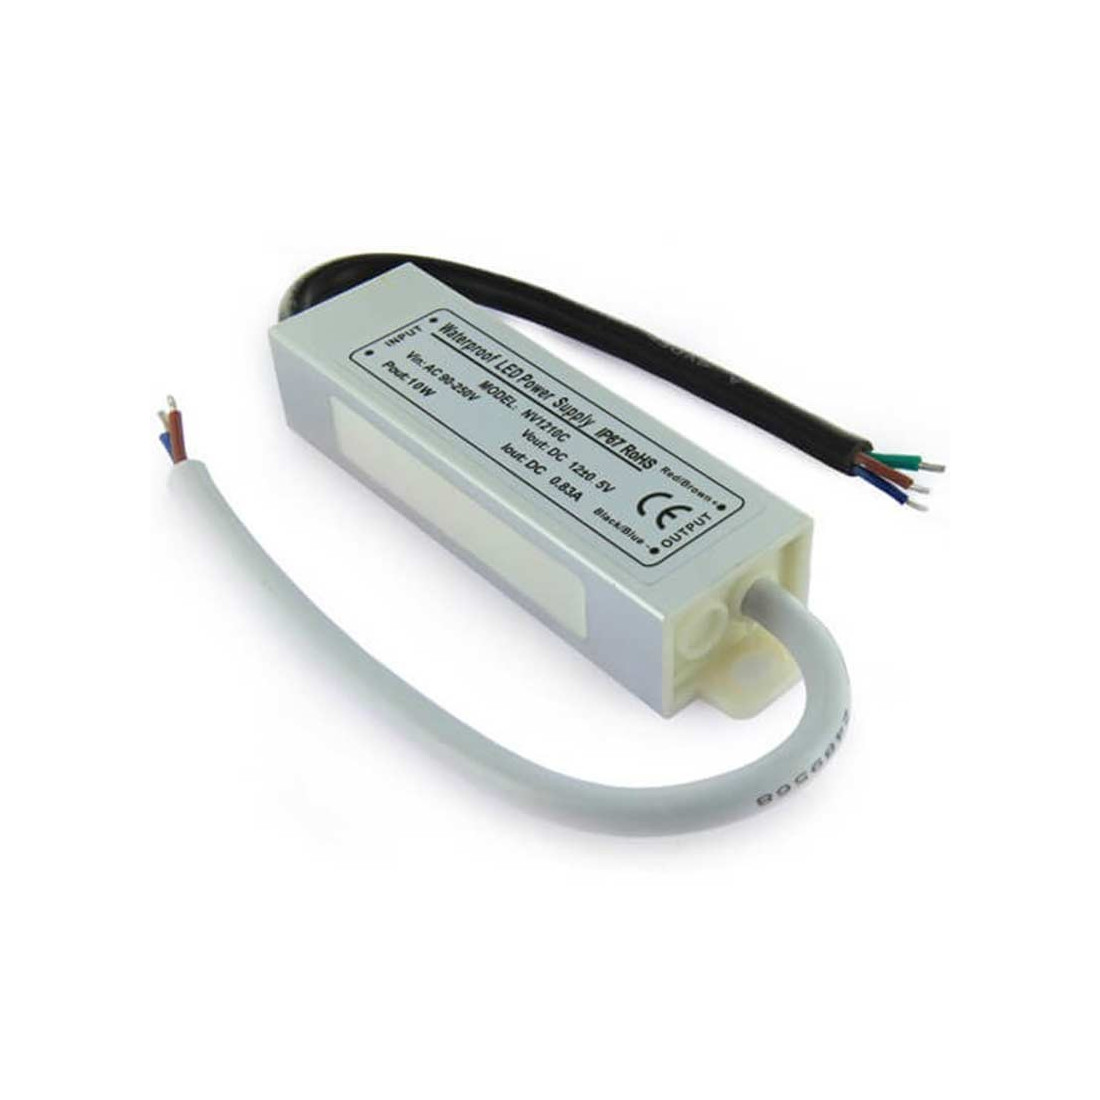 Transformateur LED ISOLED 12V/DC, 0-15W, ultra plat, SELV